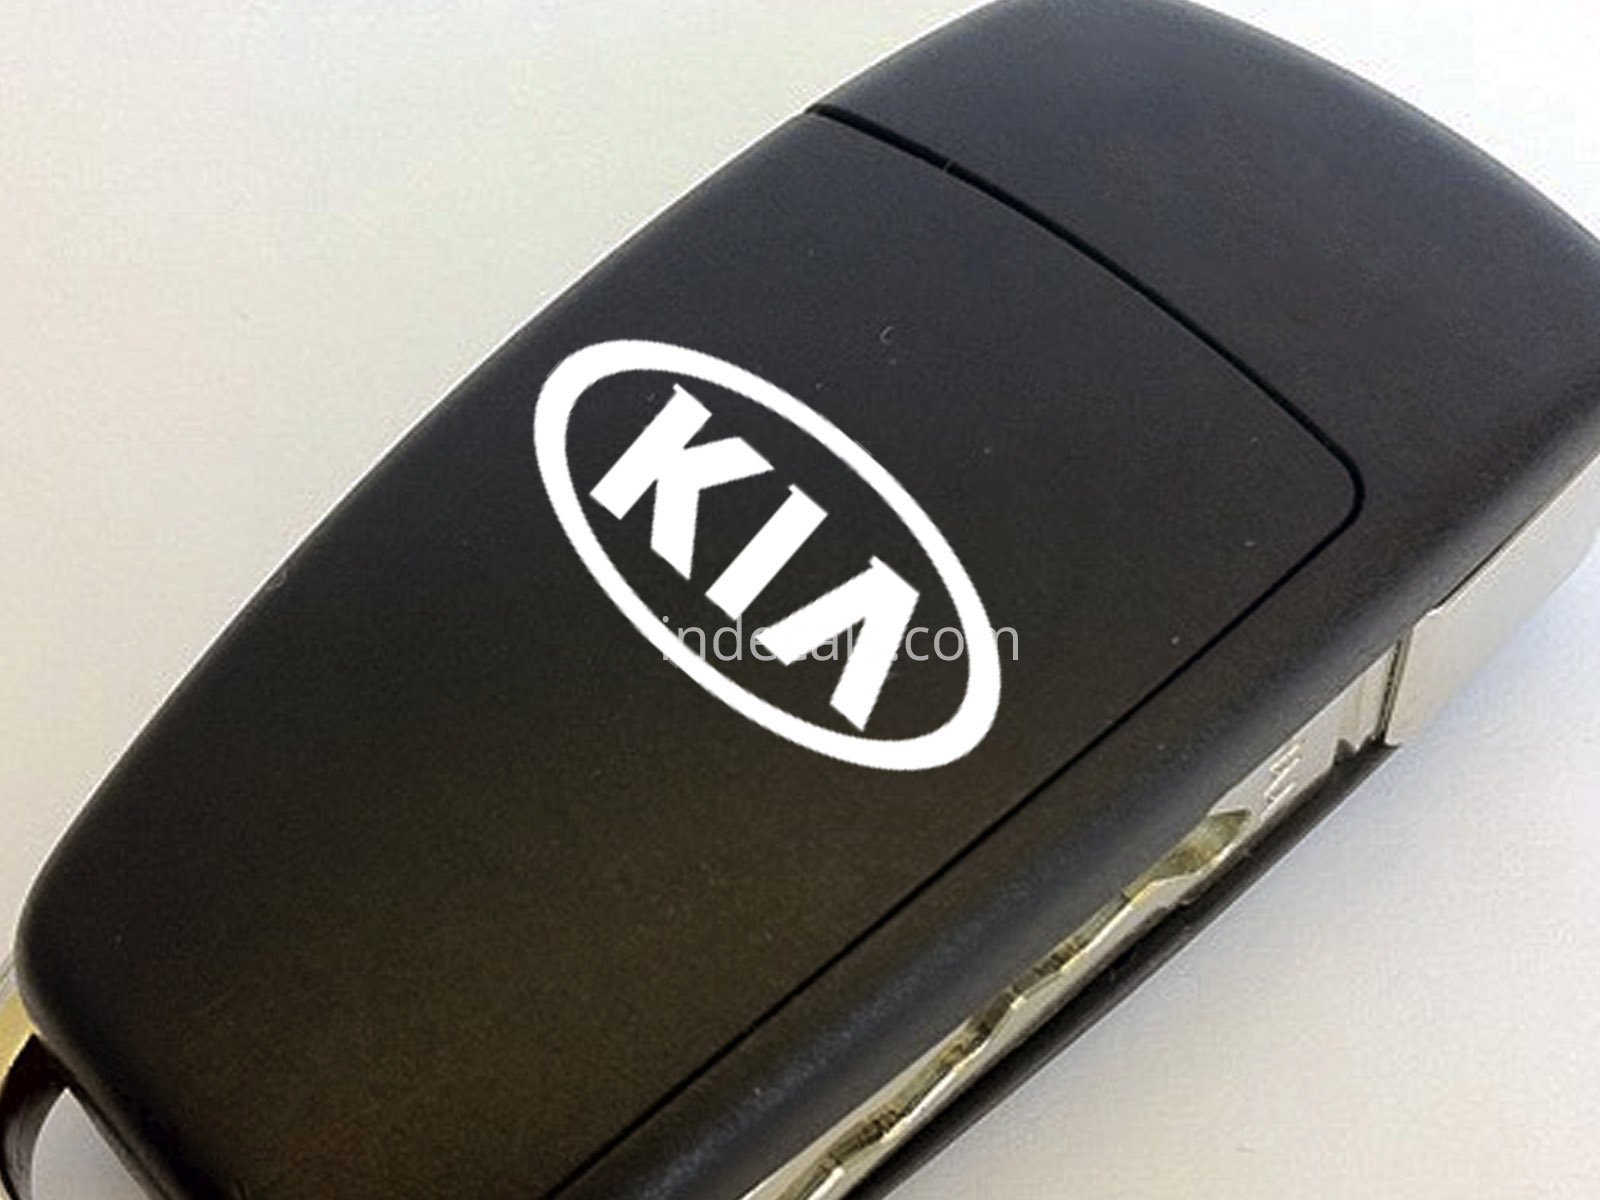 3 x KIA Stickers for Key - White